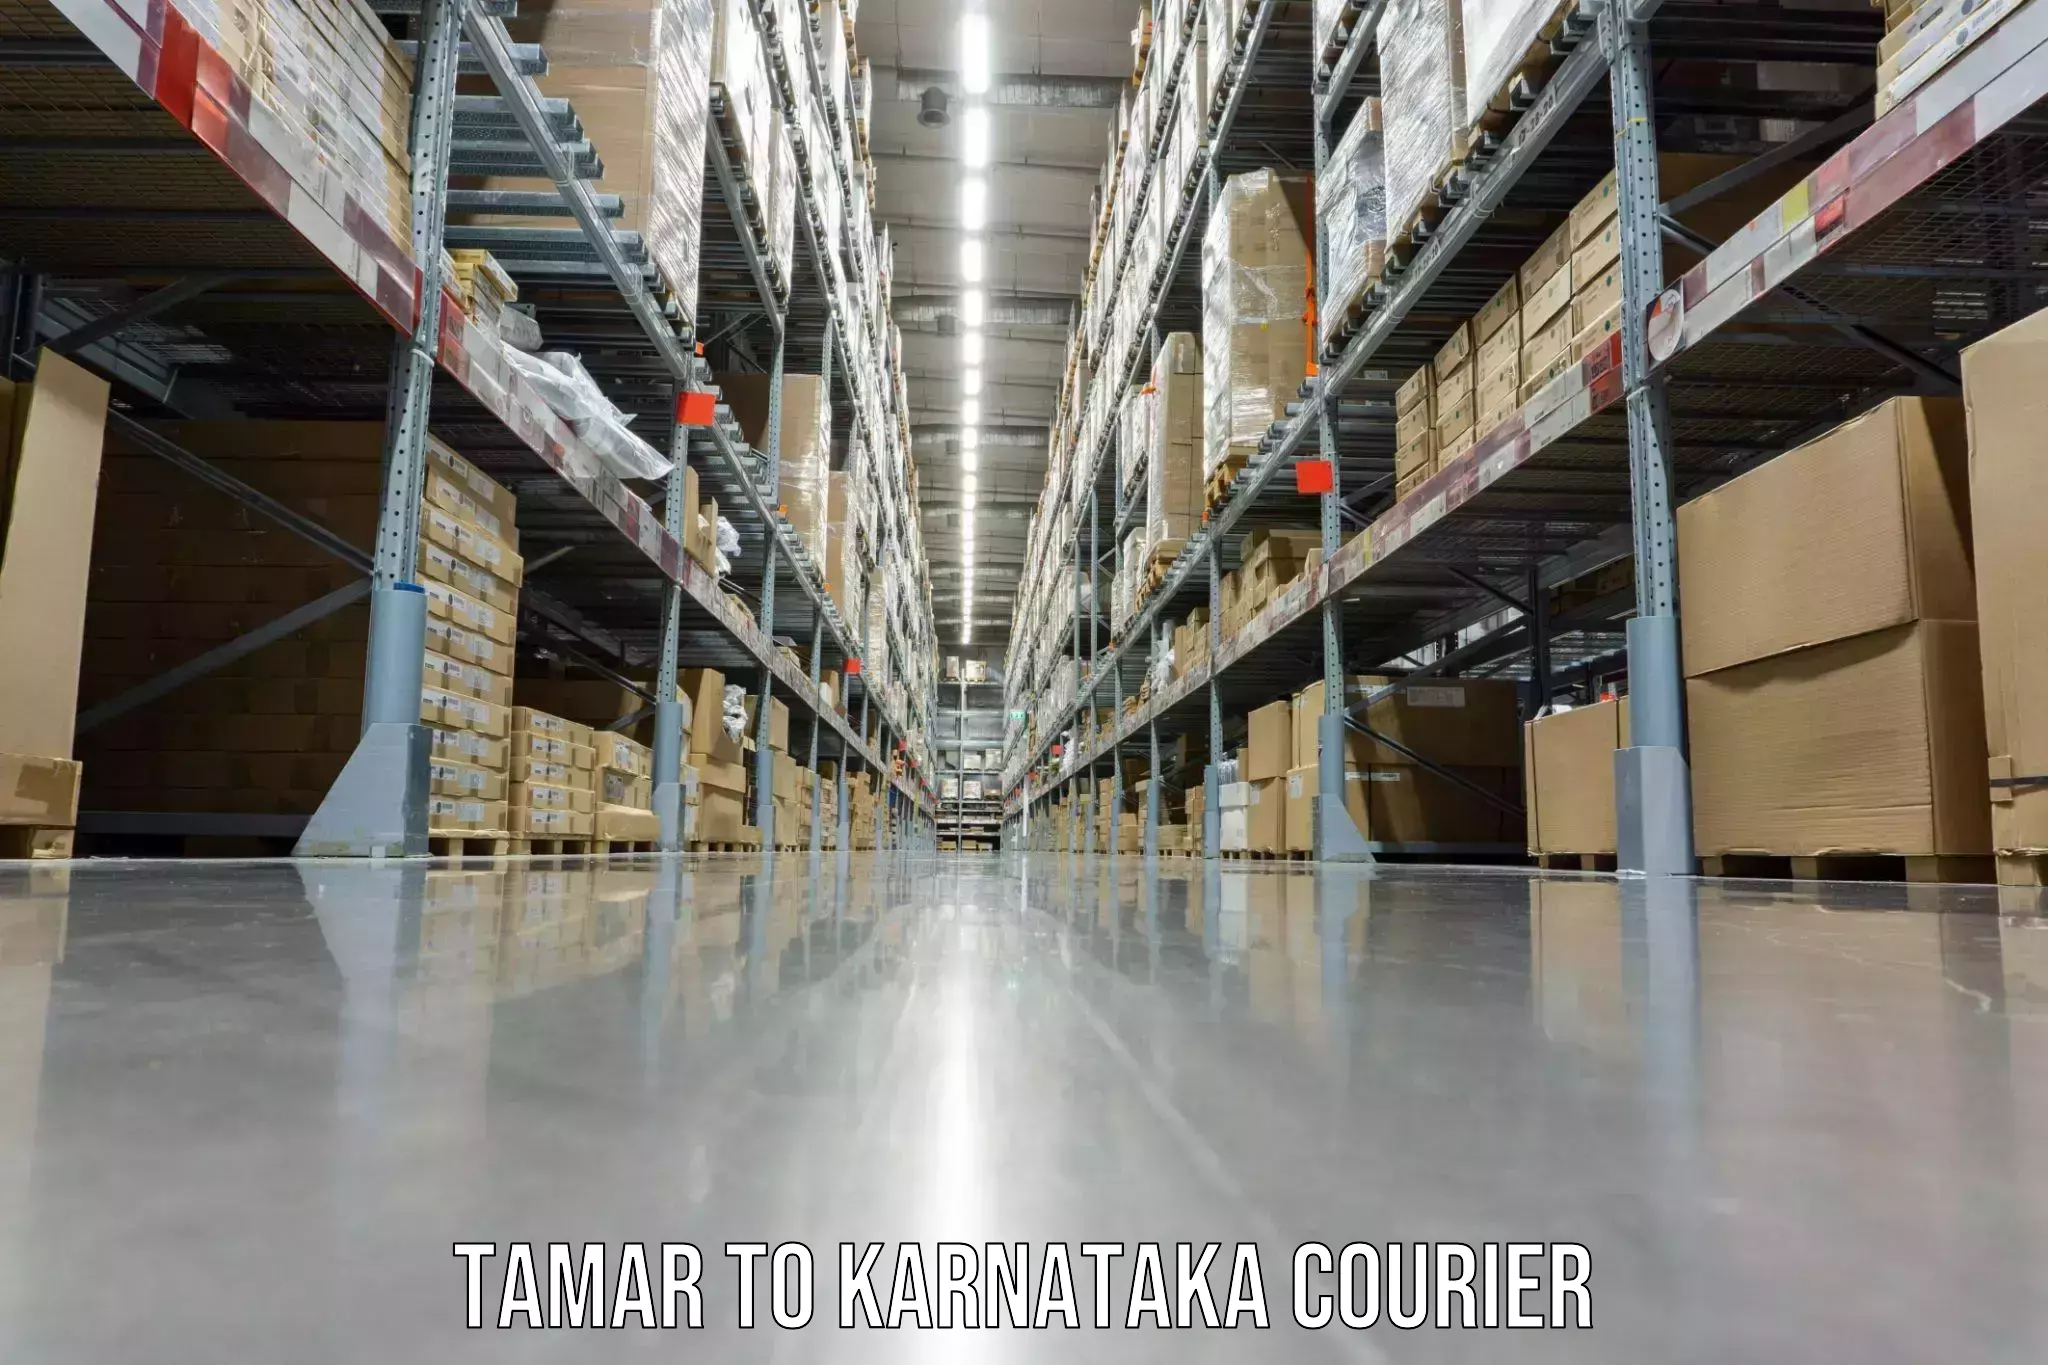 Professional packing services Tamar to Karnataka